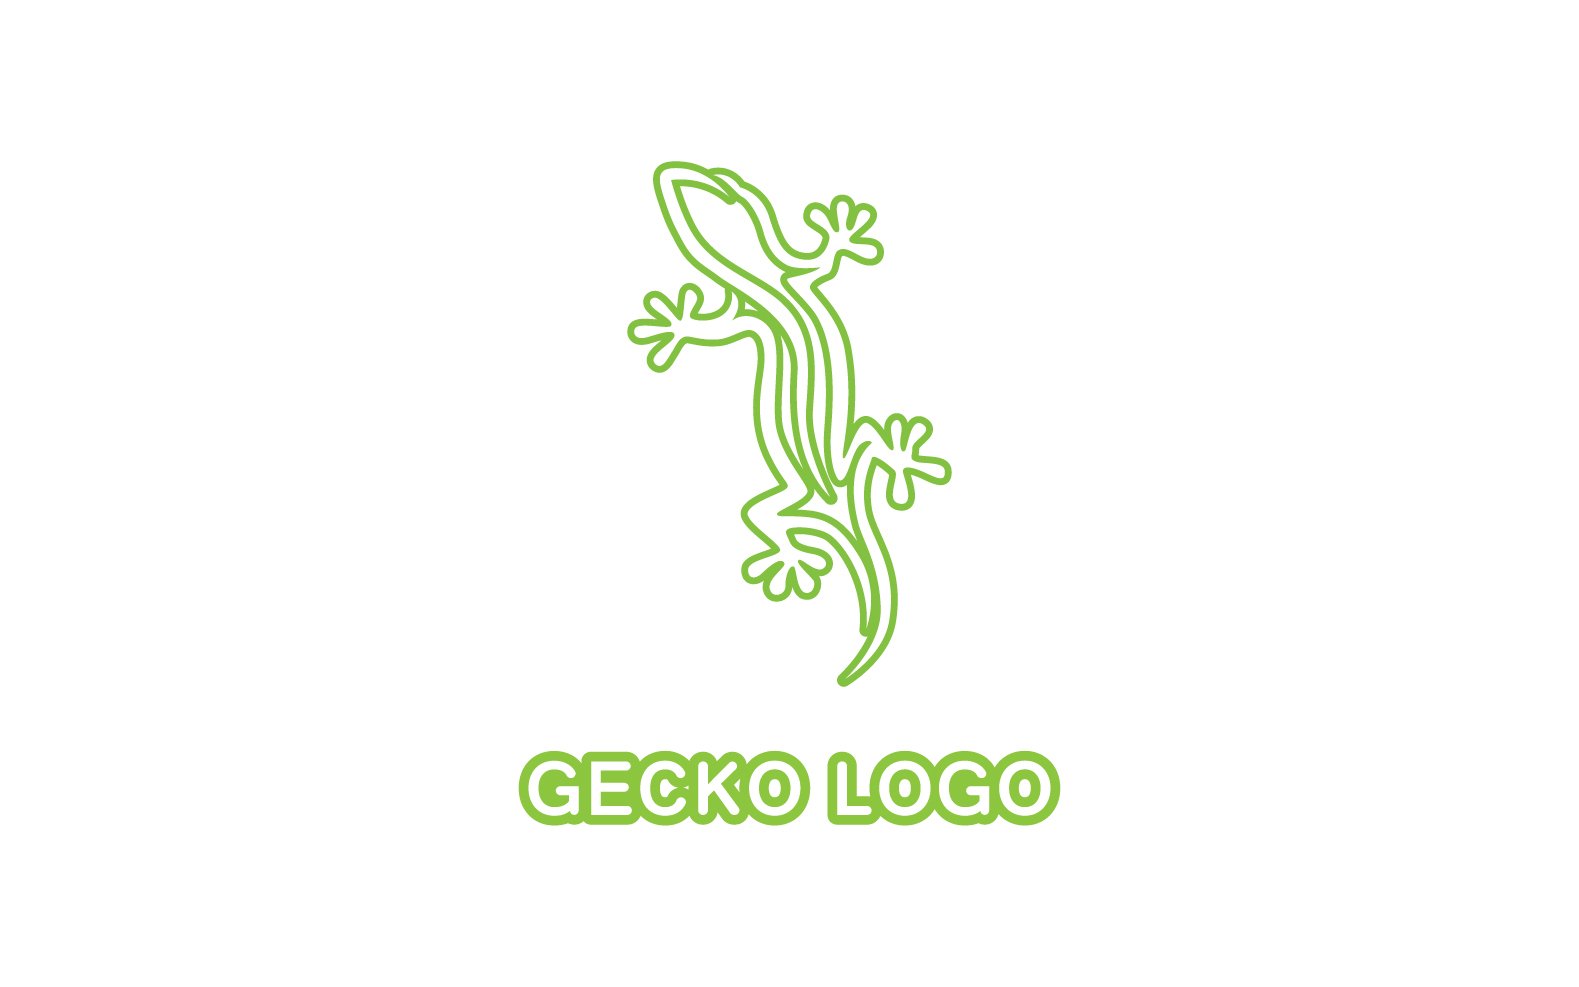 Kit Graphique #324525 Logo Gecko Divers Modles Web - Logo template Preview